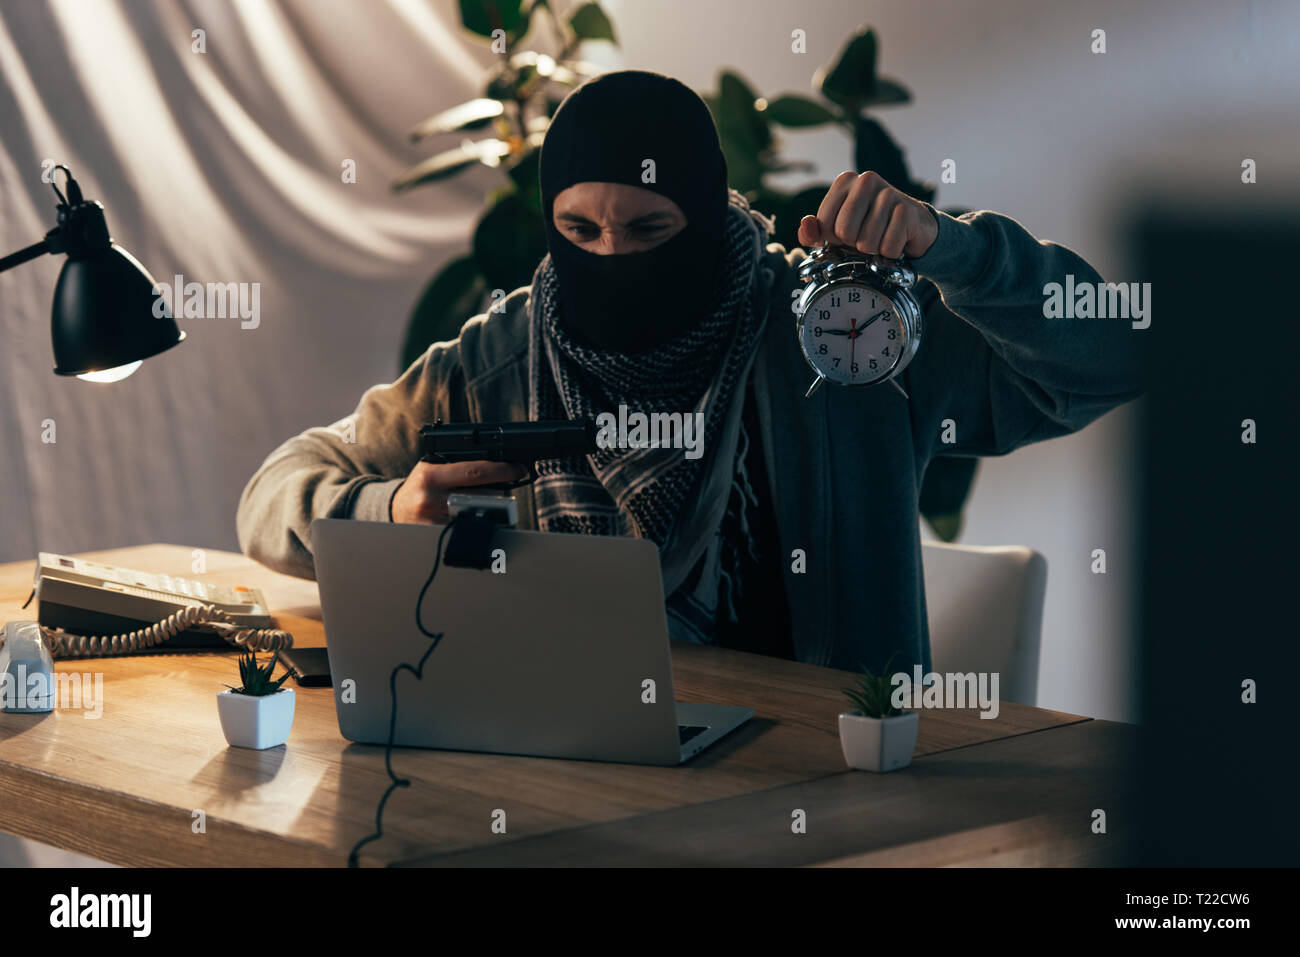 Aggressive Terrorist in Maske holding Gun und Wecker mit Webcam  Stockfotografie - Alamy